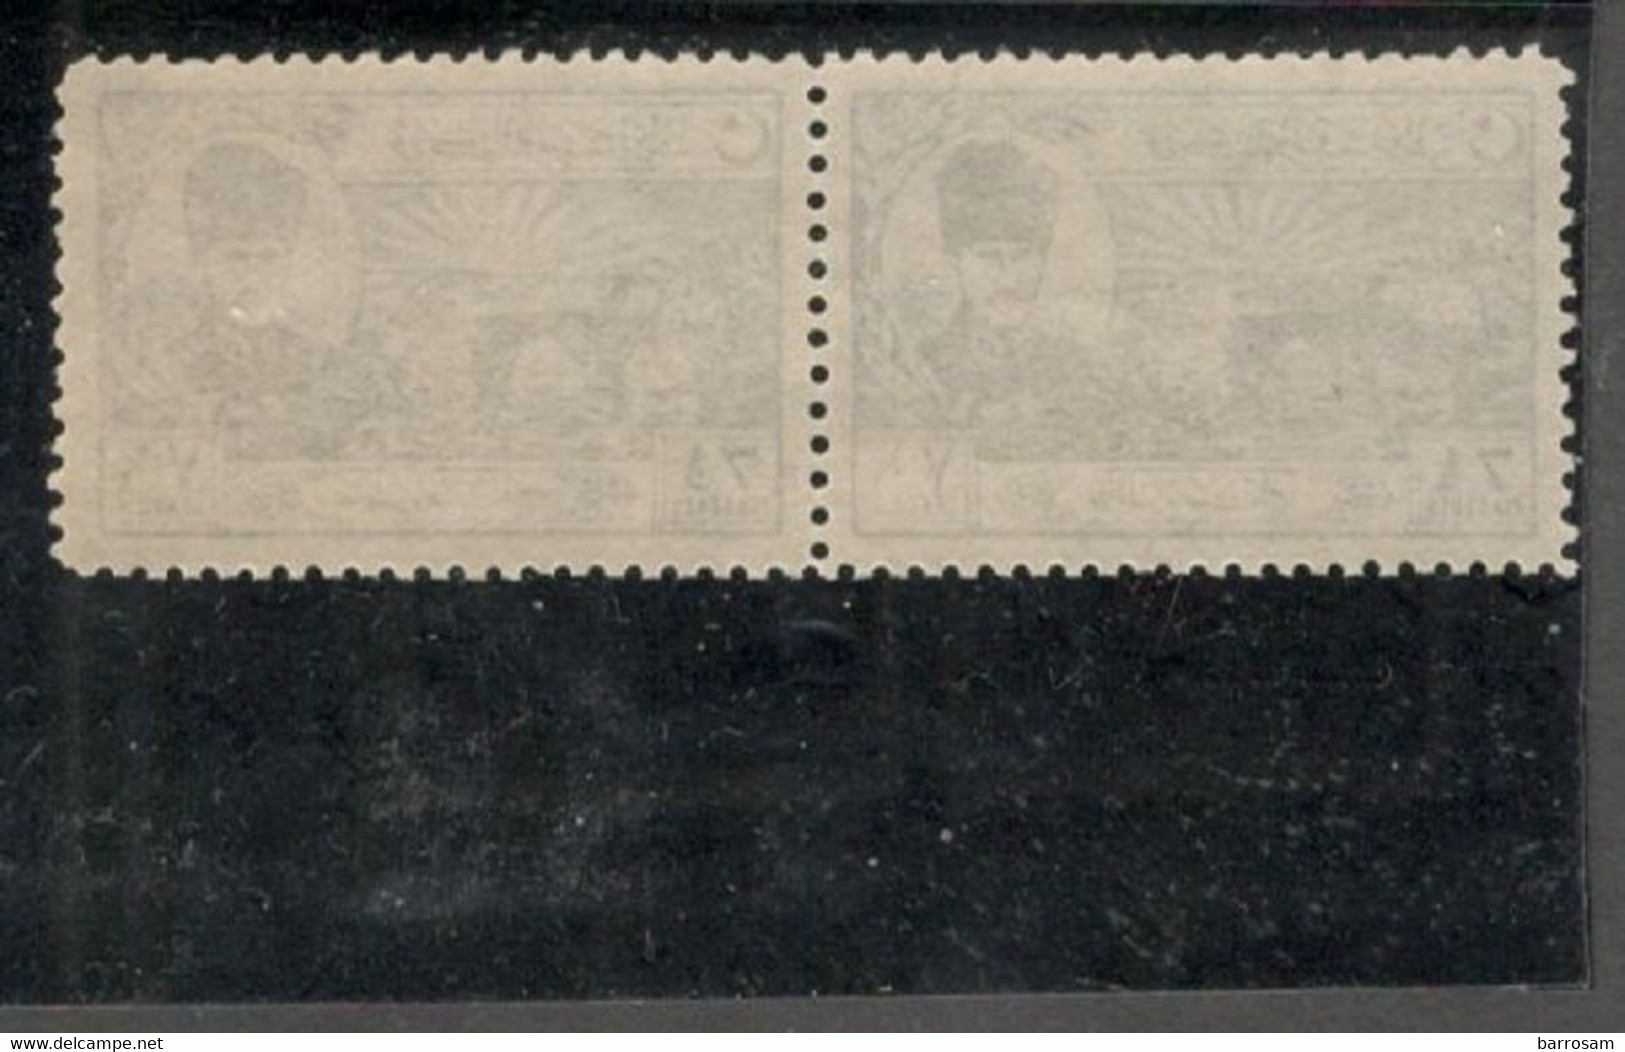 TURKEY 1924:Michel 803mnh** Pair Cat.Value80€($97)tu - Unused Stamps